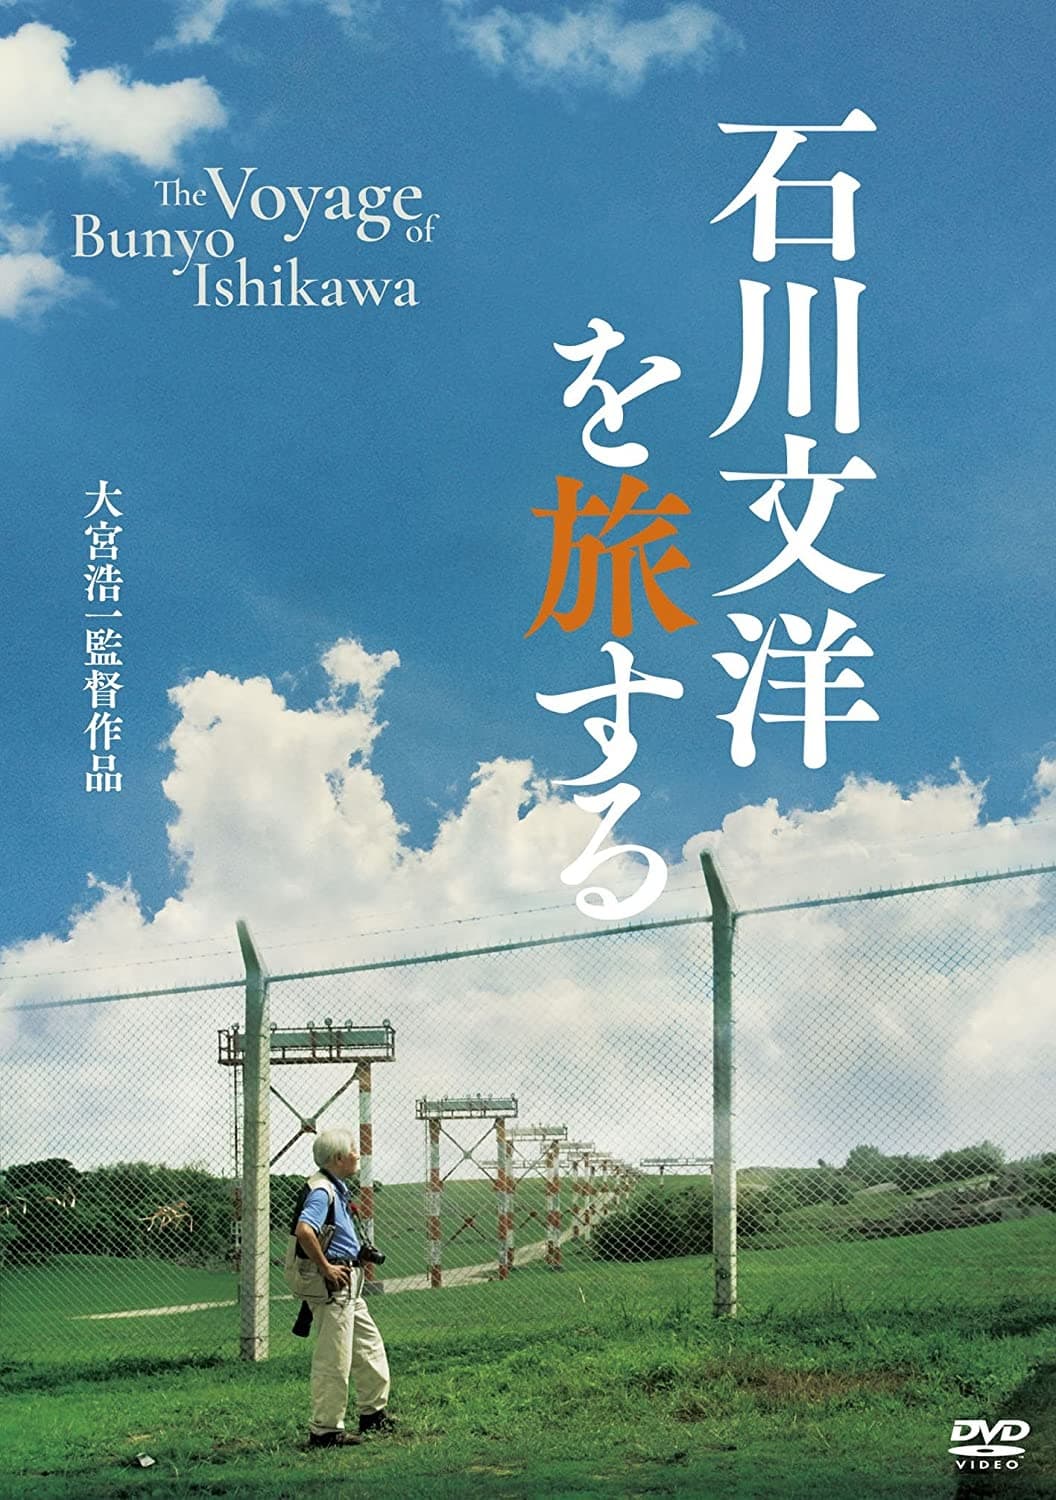 The Voyage of Bunyo Ishikawa